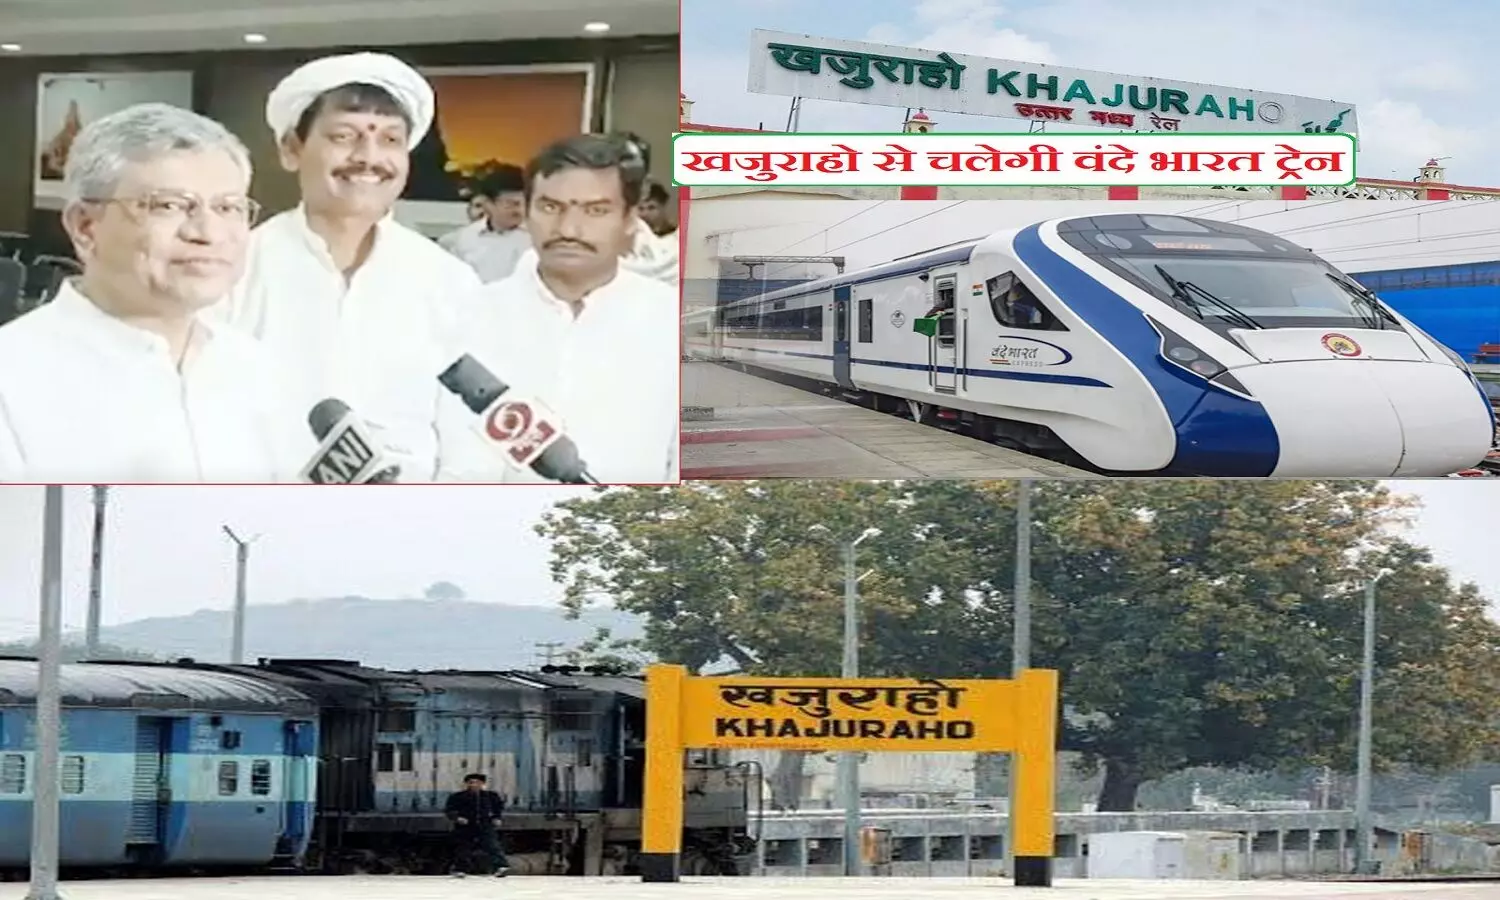 खजुराहो में बनेगा वर्ल्ड क्लास रेलवे स्टेशन, मध्य प्रदेश की पहली वंदे भारत ट्रेन यहीं से शुरू होगी